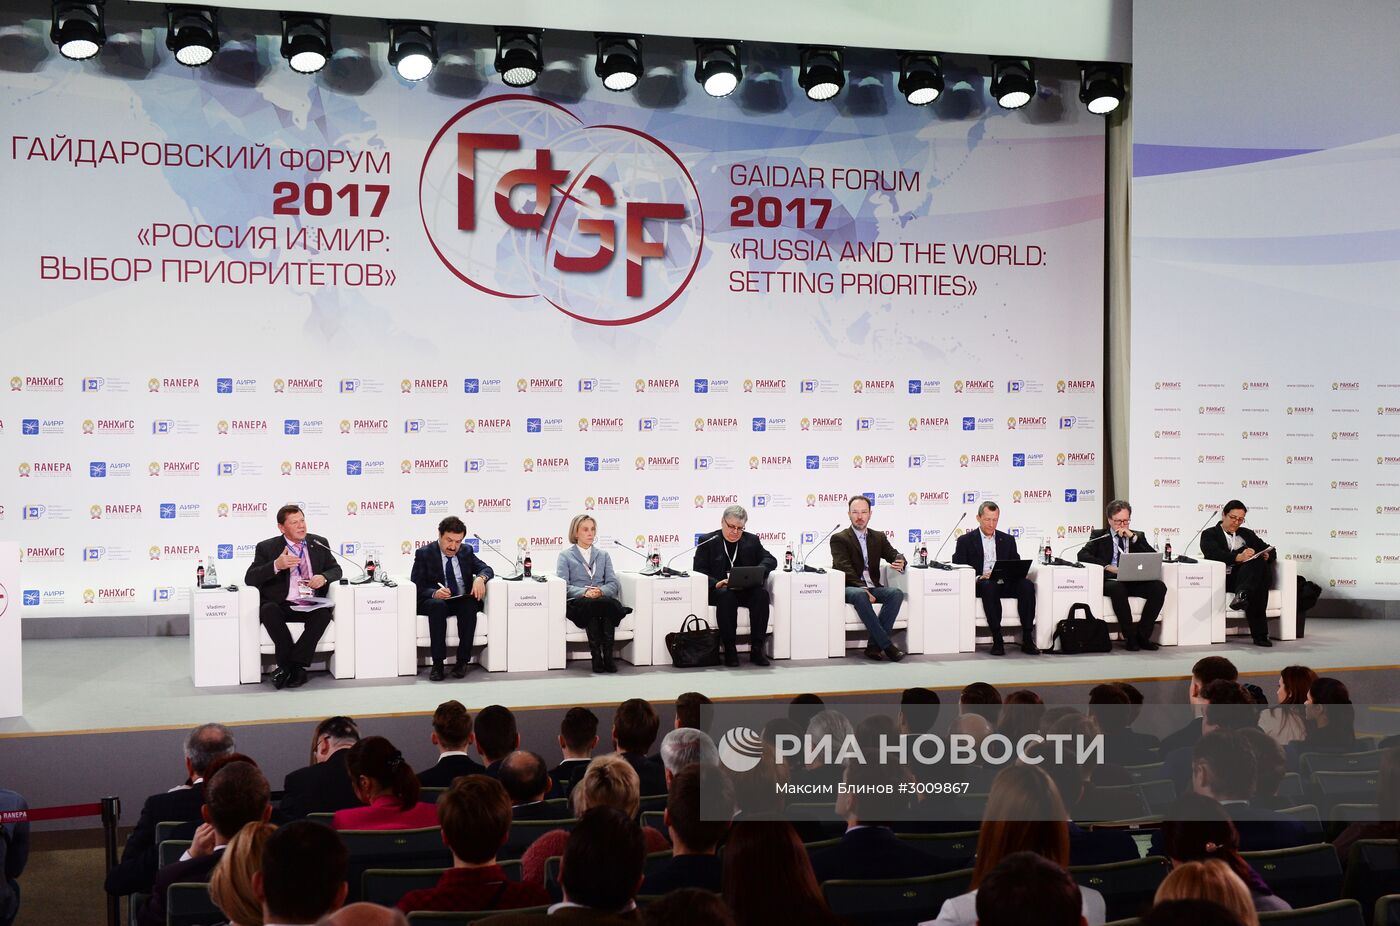 VIII Гайдаровский форум "Россия и мир: выбор приоритетов". Третий день